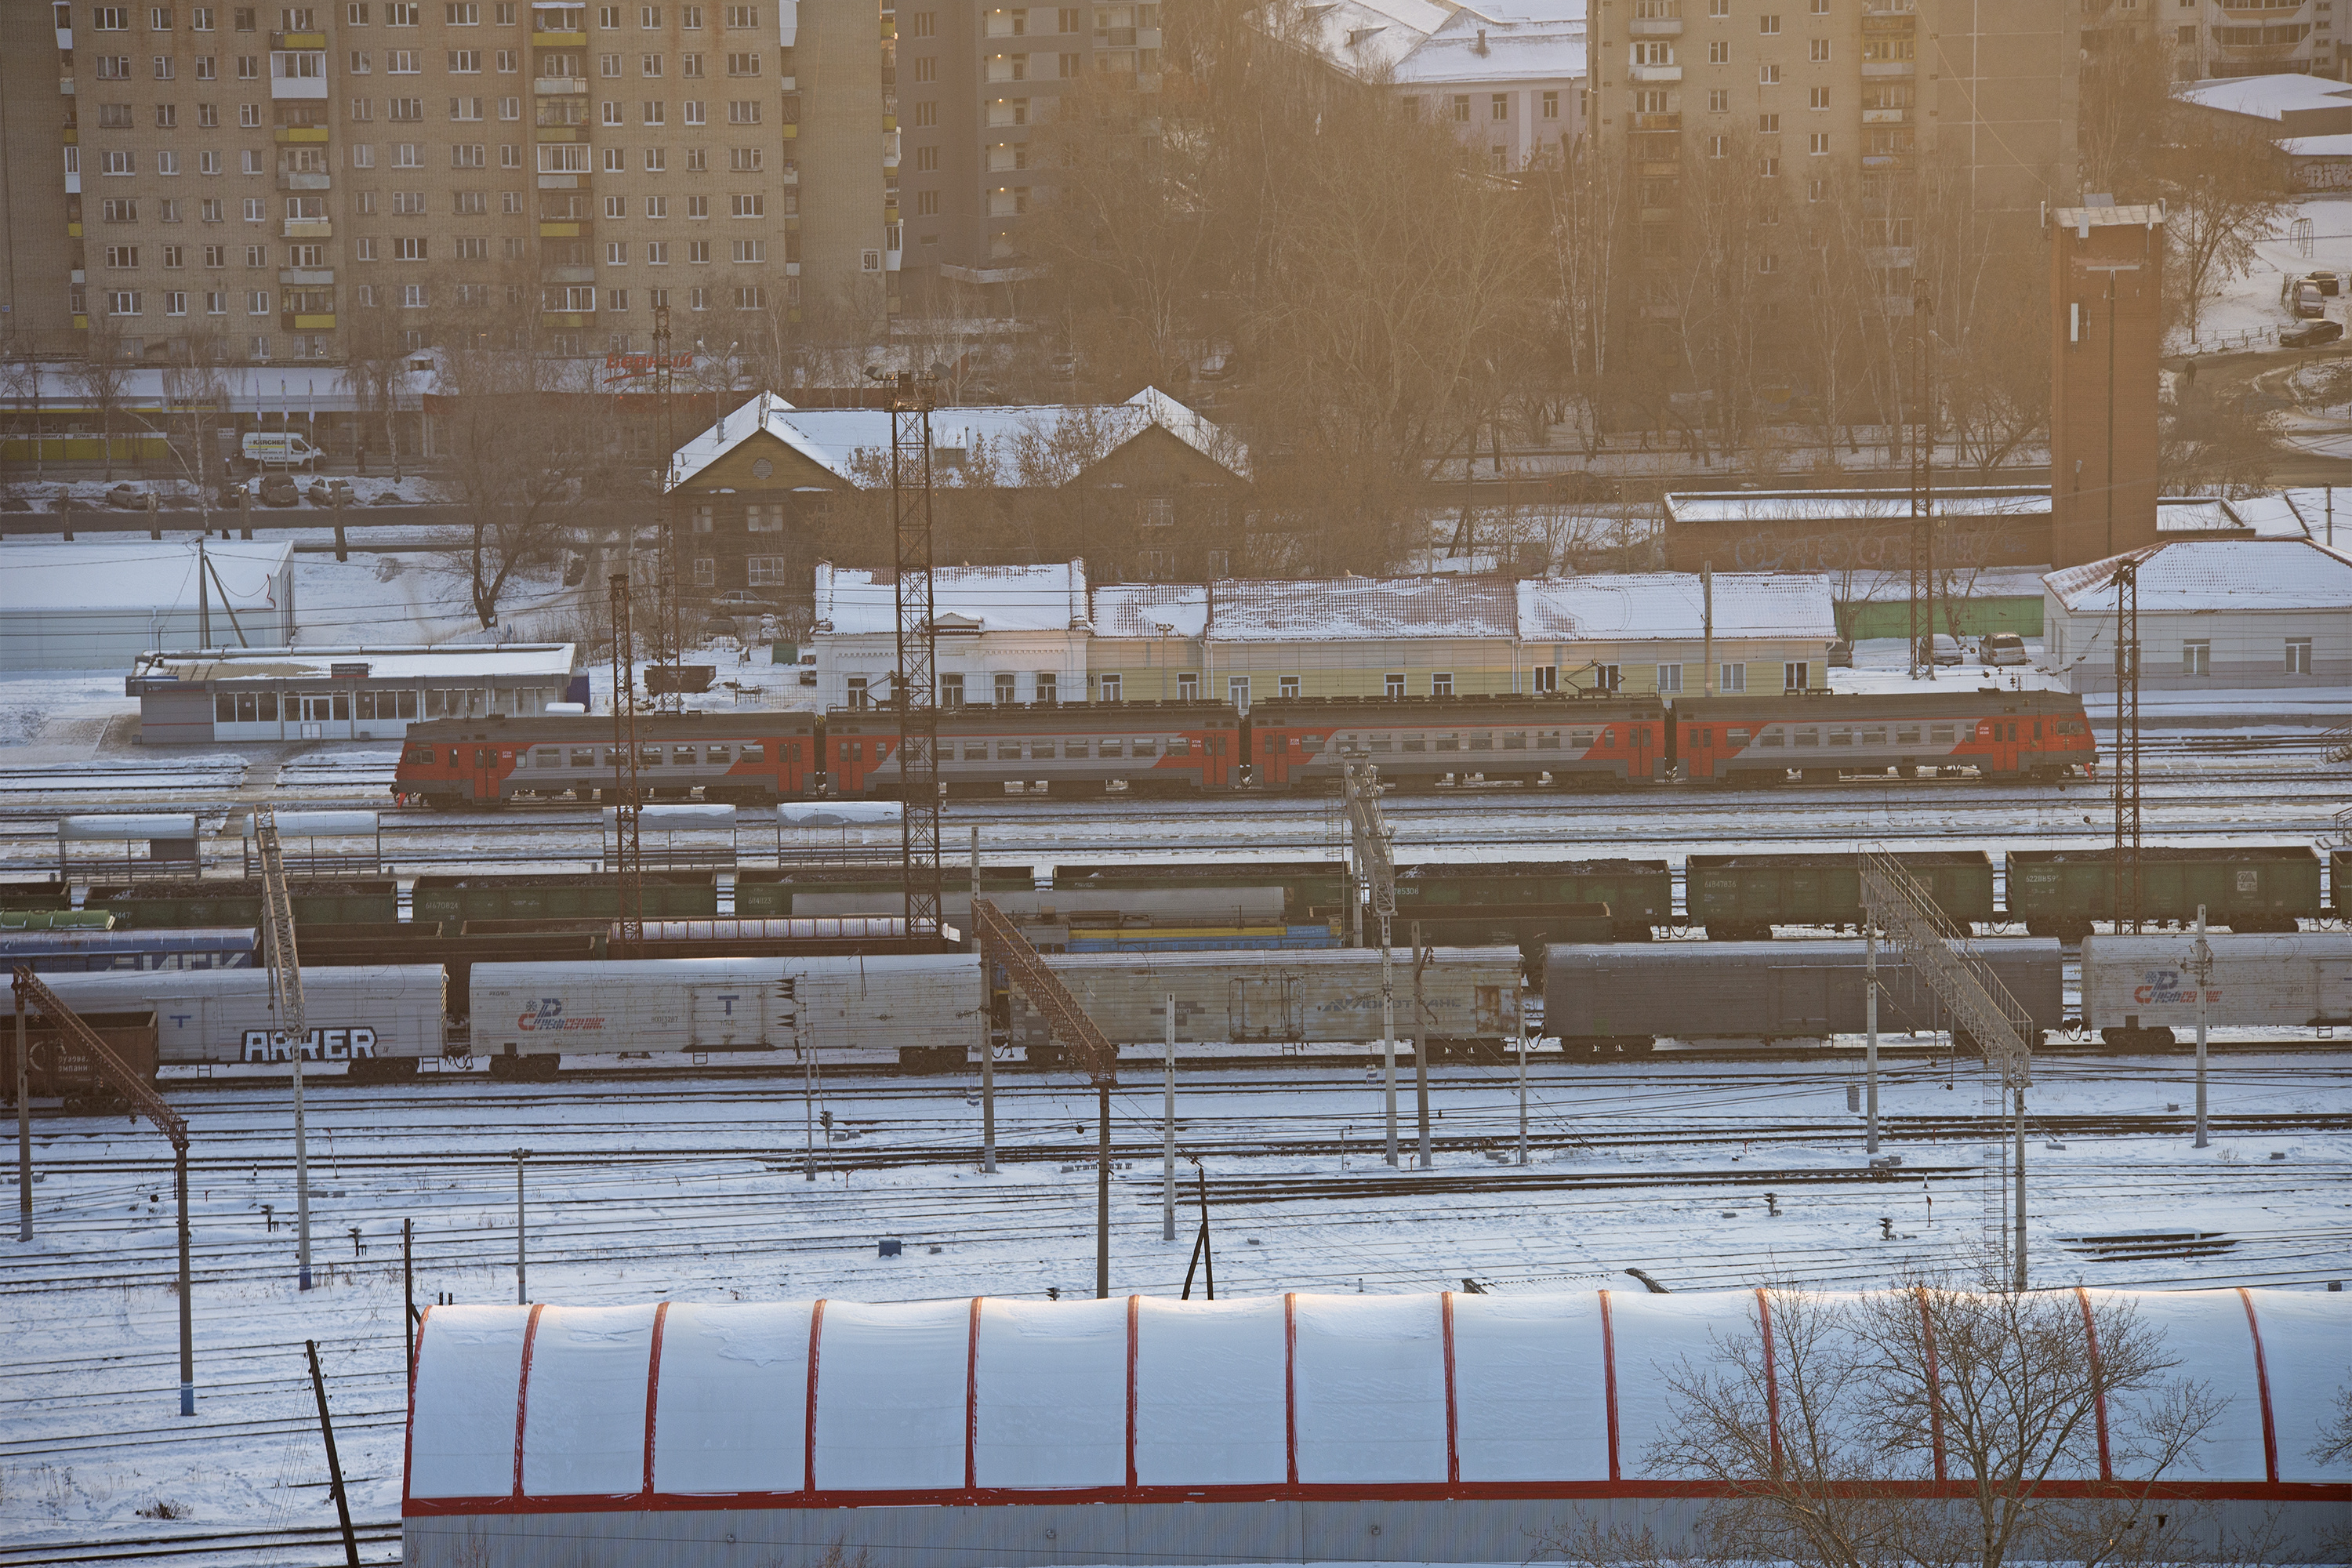 Railway Порно Видео | altaifish.ru